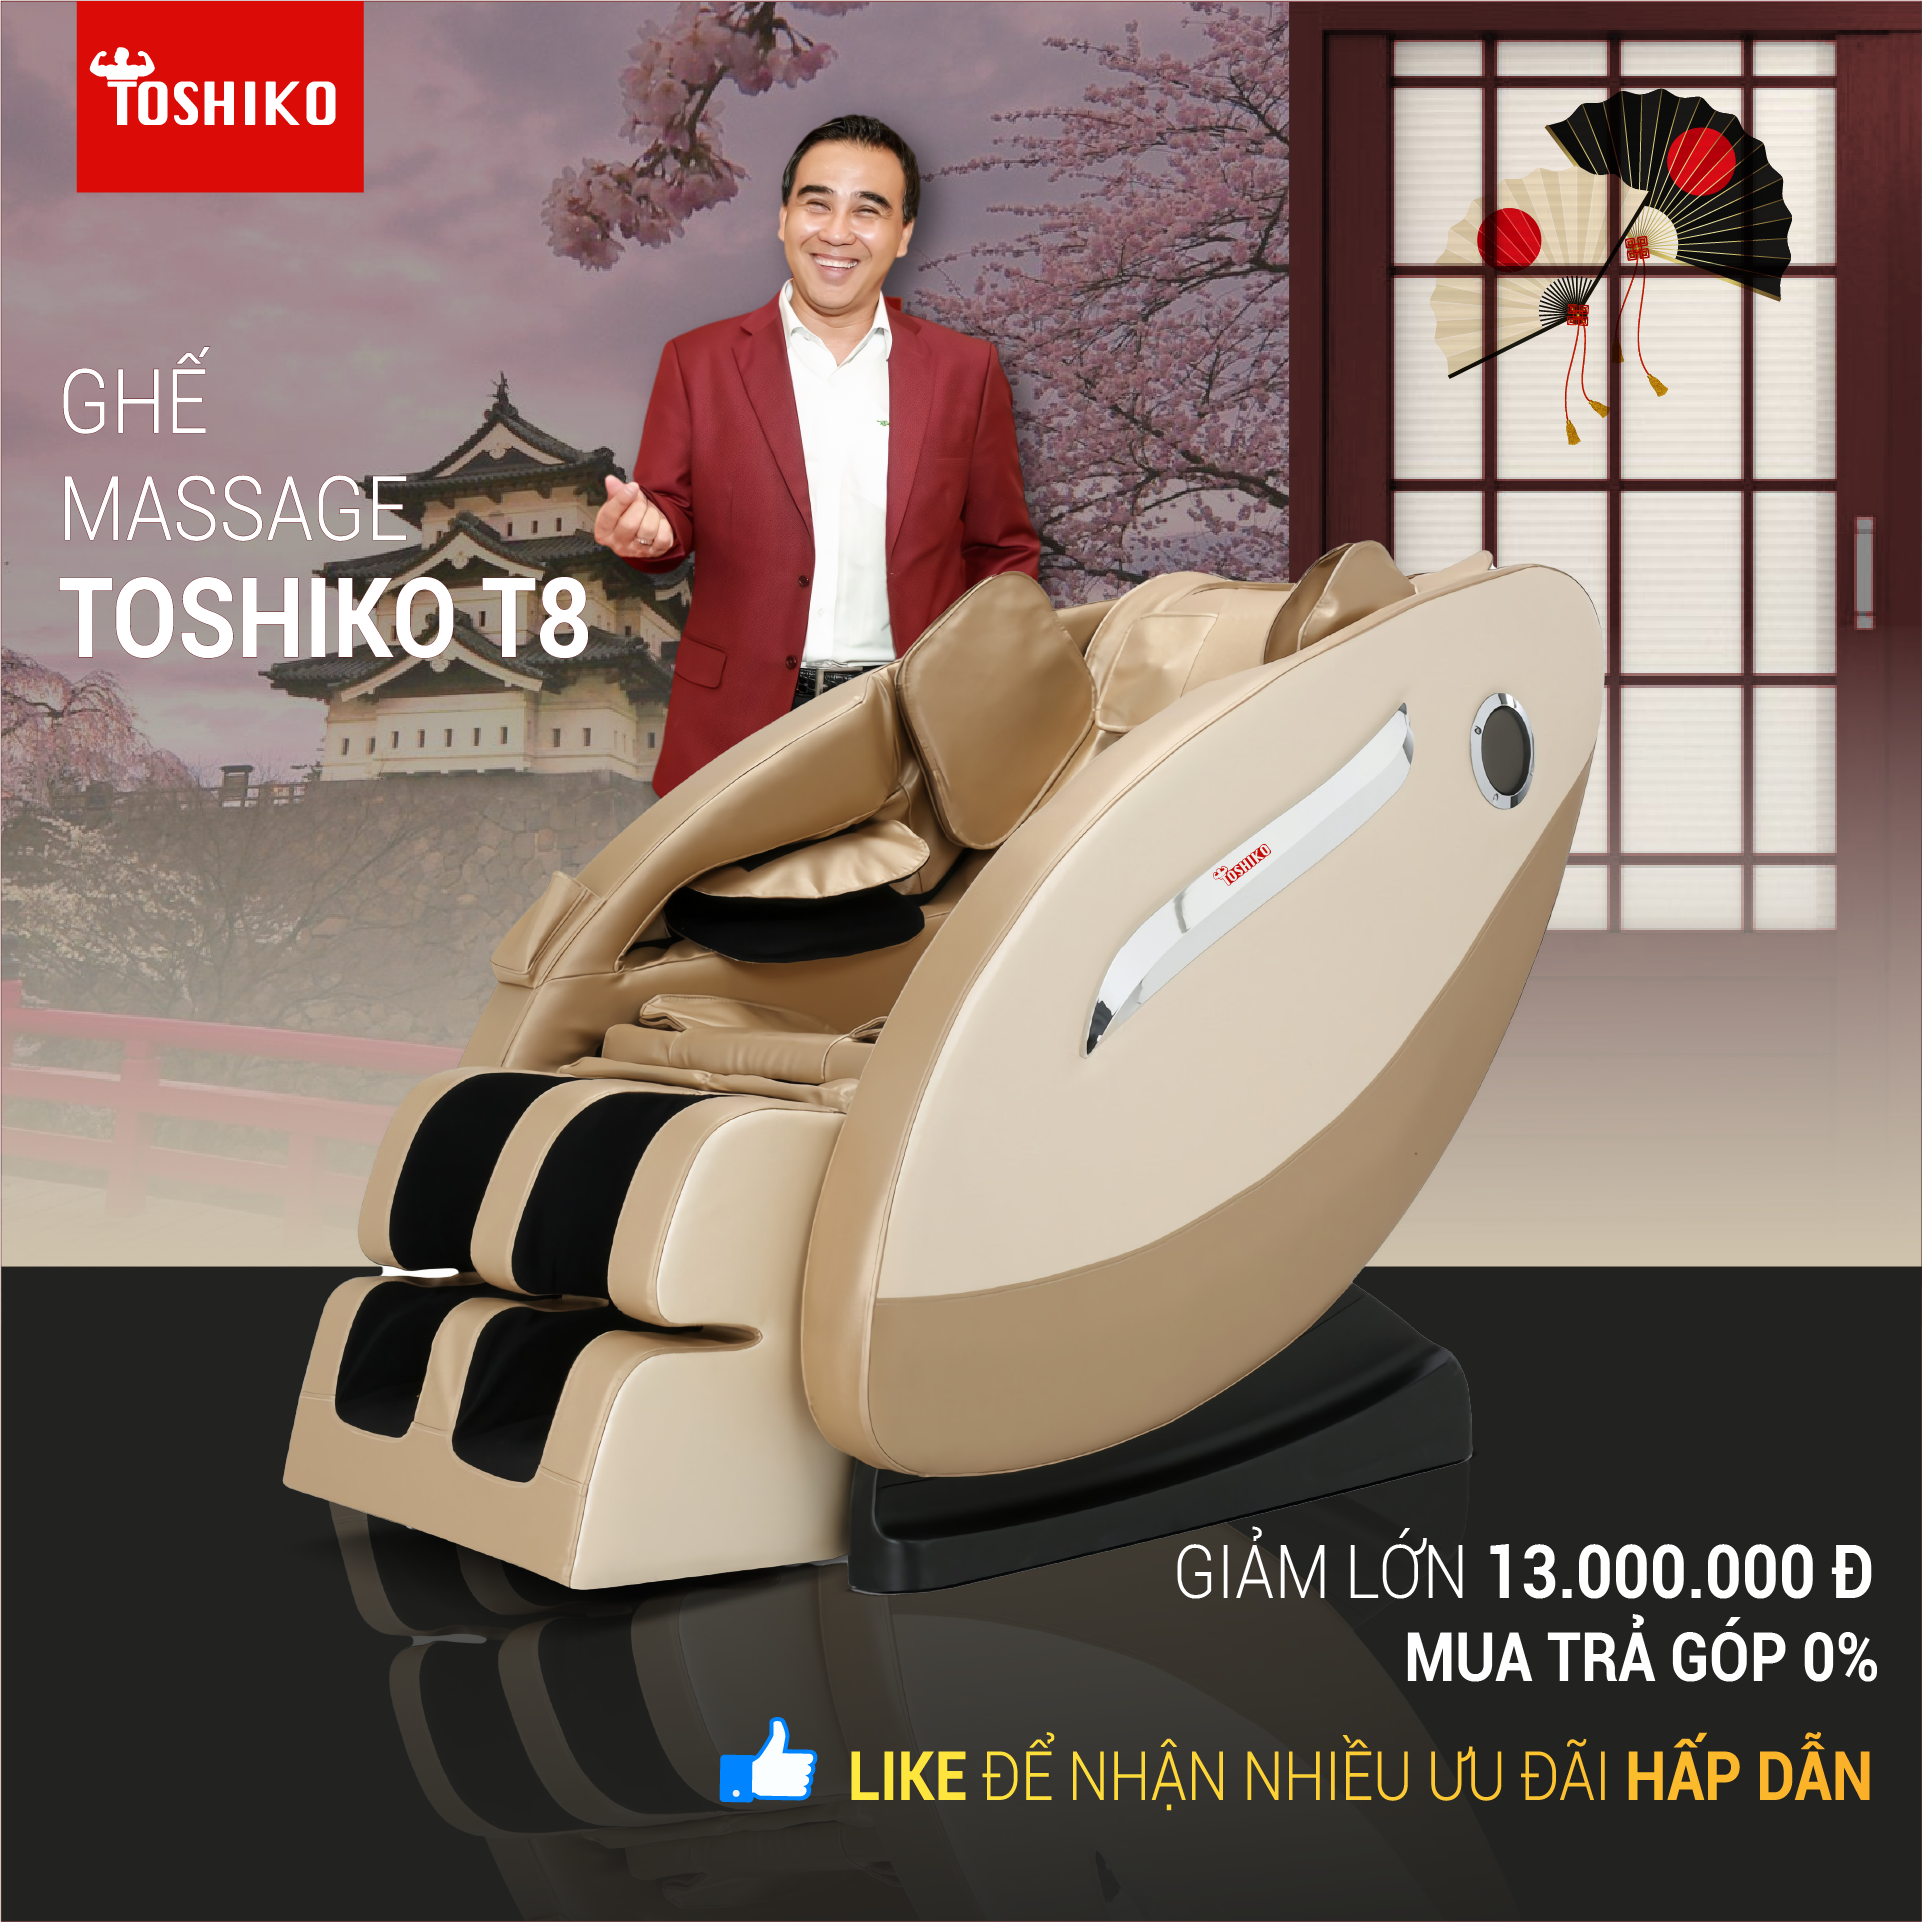 ghế massage Toshiko T8 phiên bản nâng cấp giá không đổi